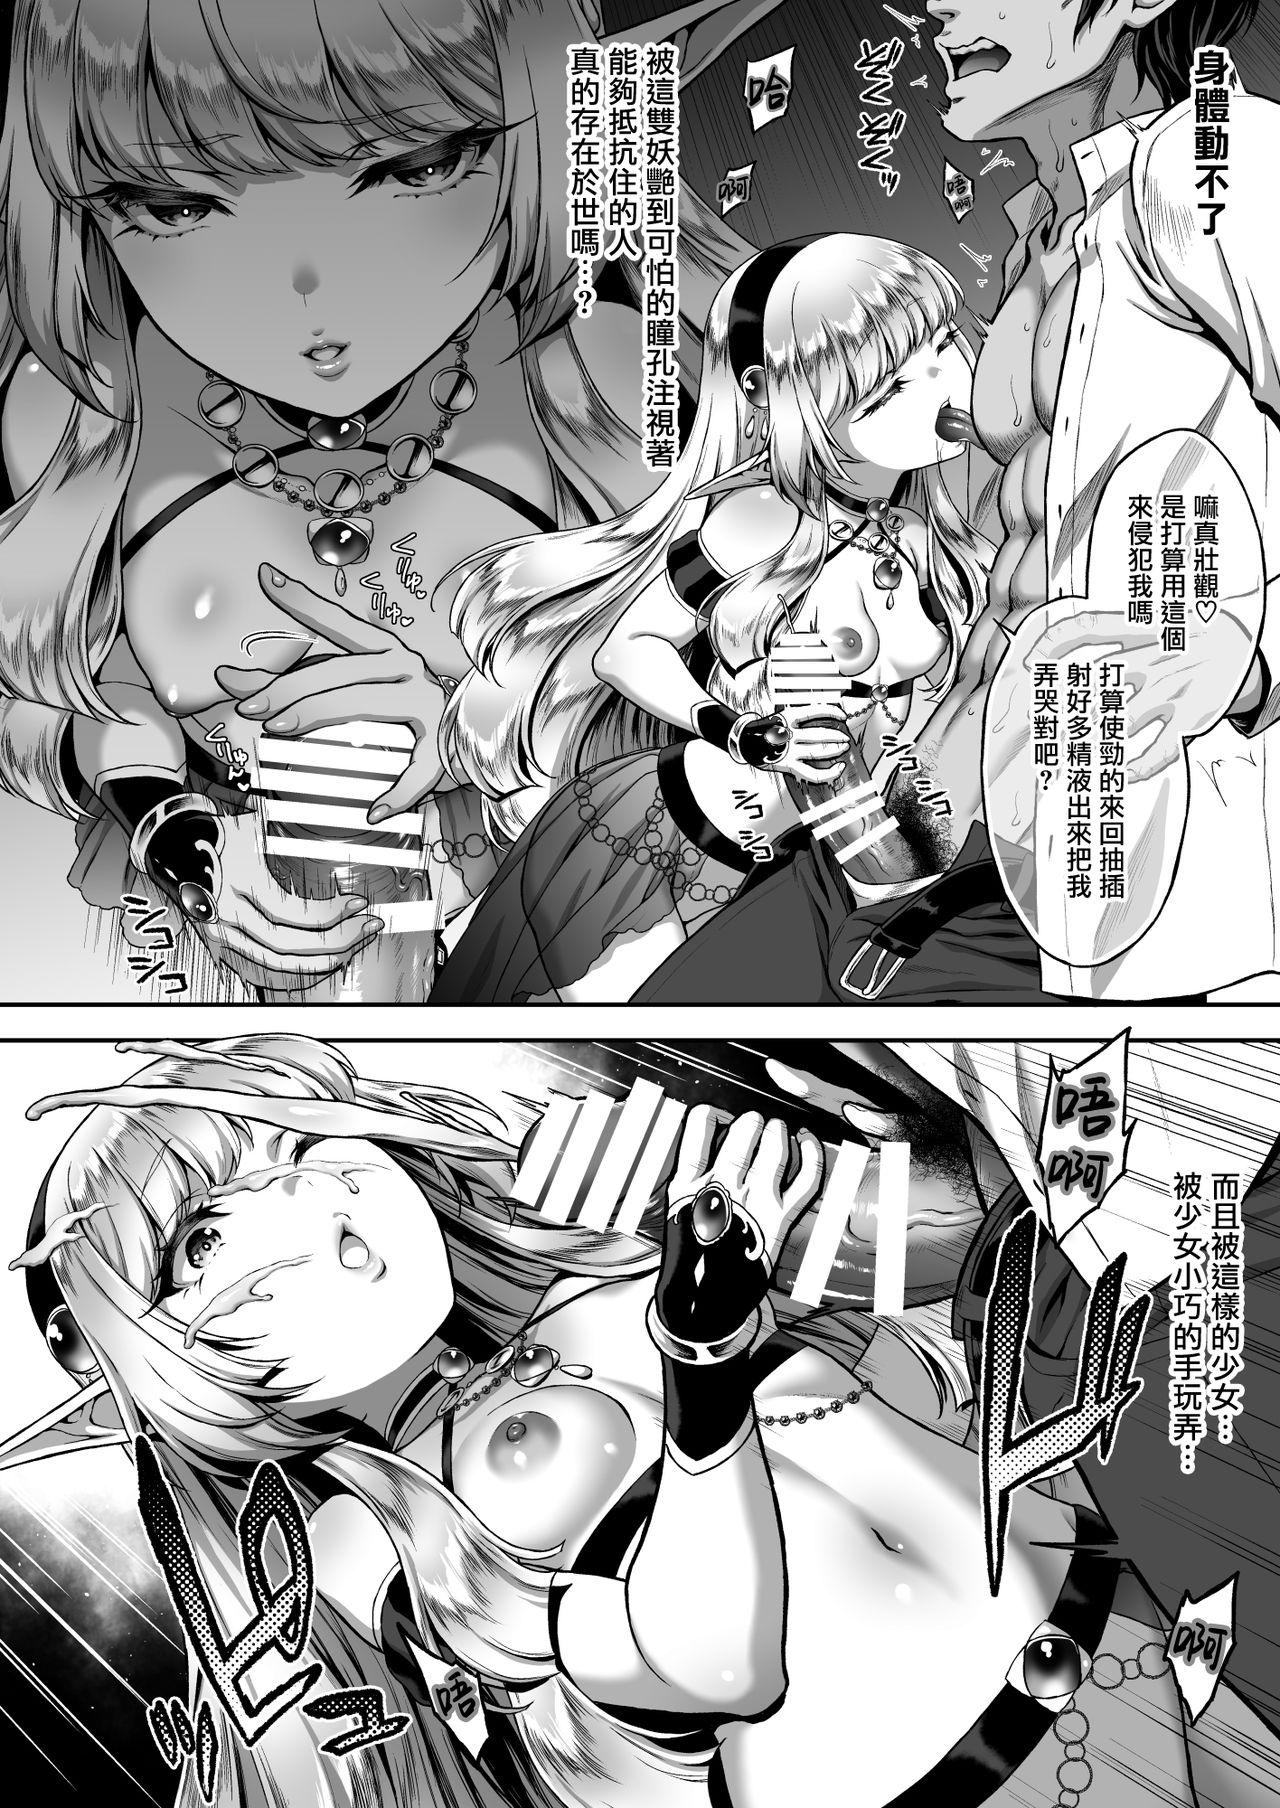 Transex Yuukyuu no Shou Elf 1 "Dokuhebi" - Original Blows - Page 10